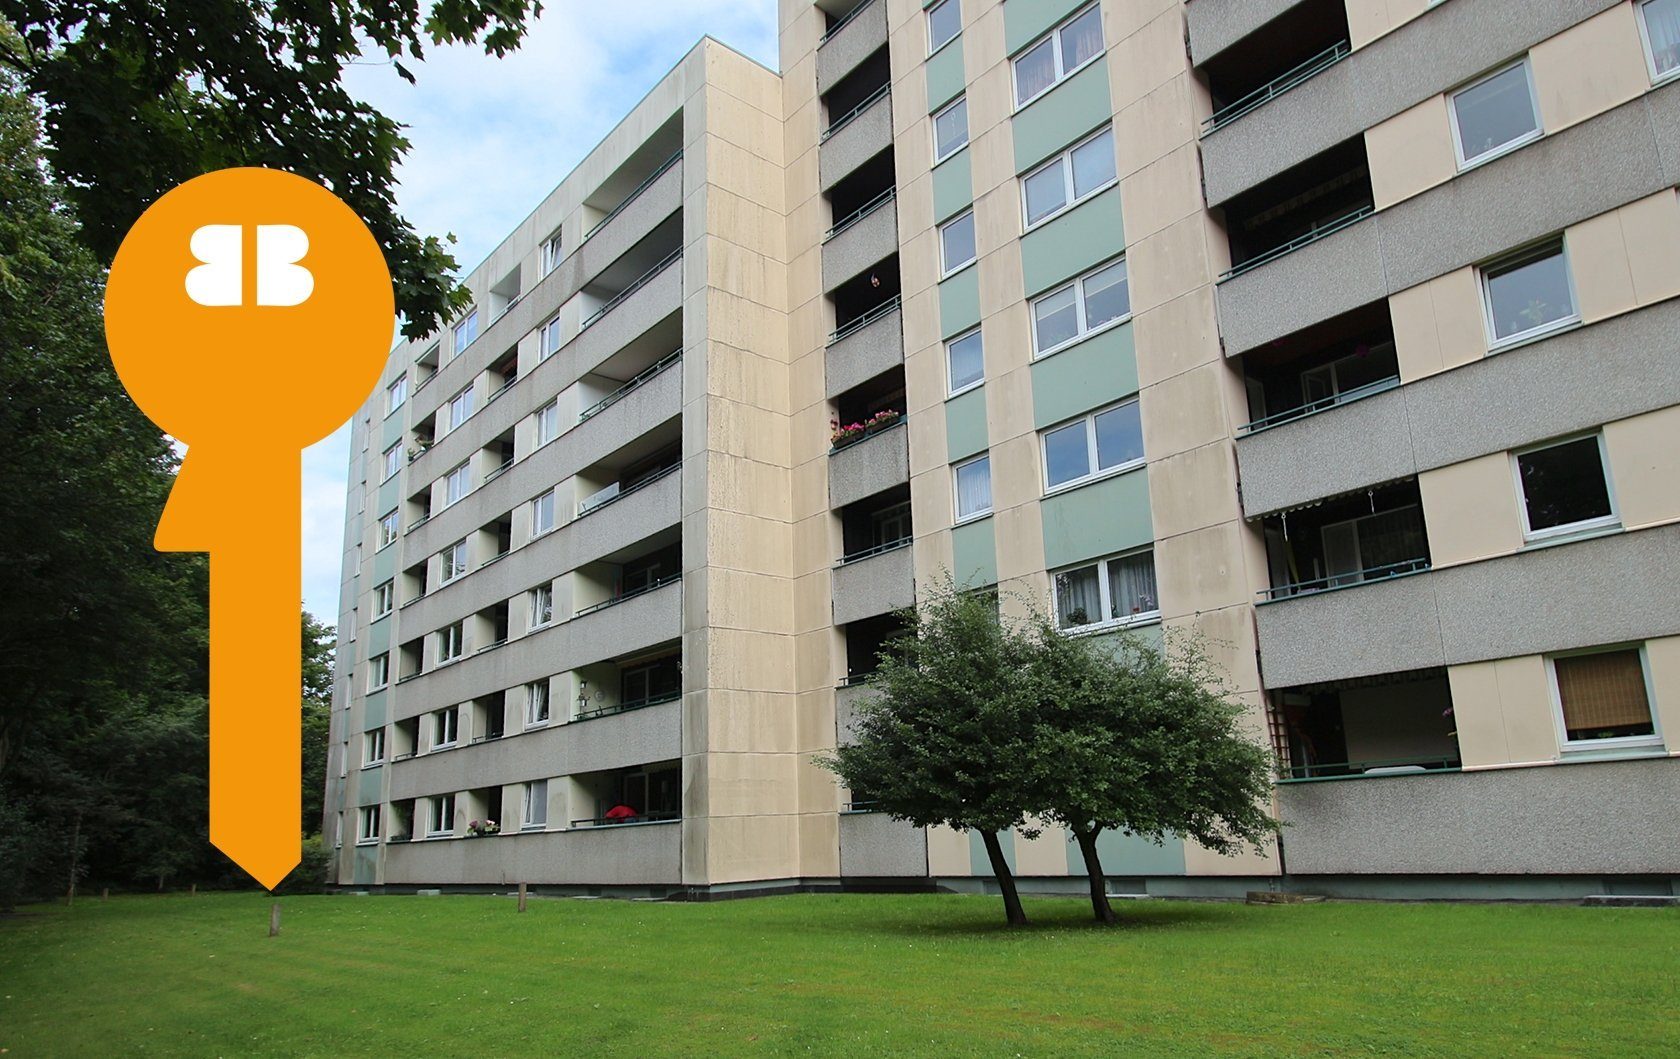 Immobilienangebot - Flensburg - Alle - Helle, seniorengerechte 4-Zi.-Wohnung mit 2 Balkonen am Rande der Westlichen Höhe, nähe Citti!